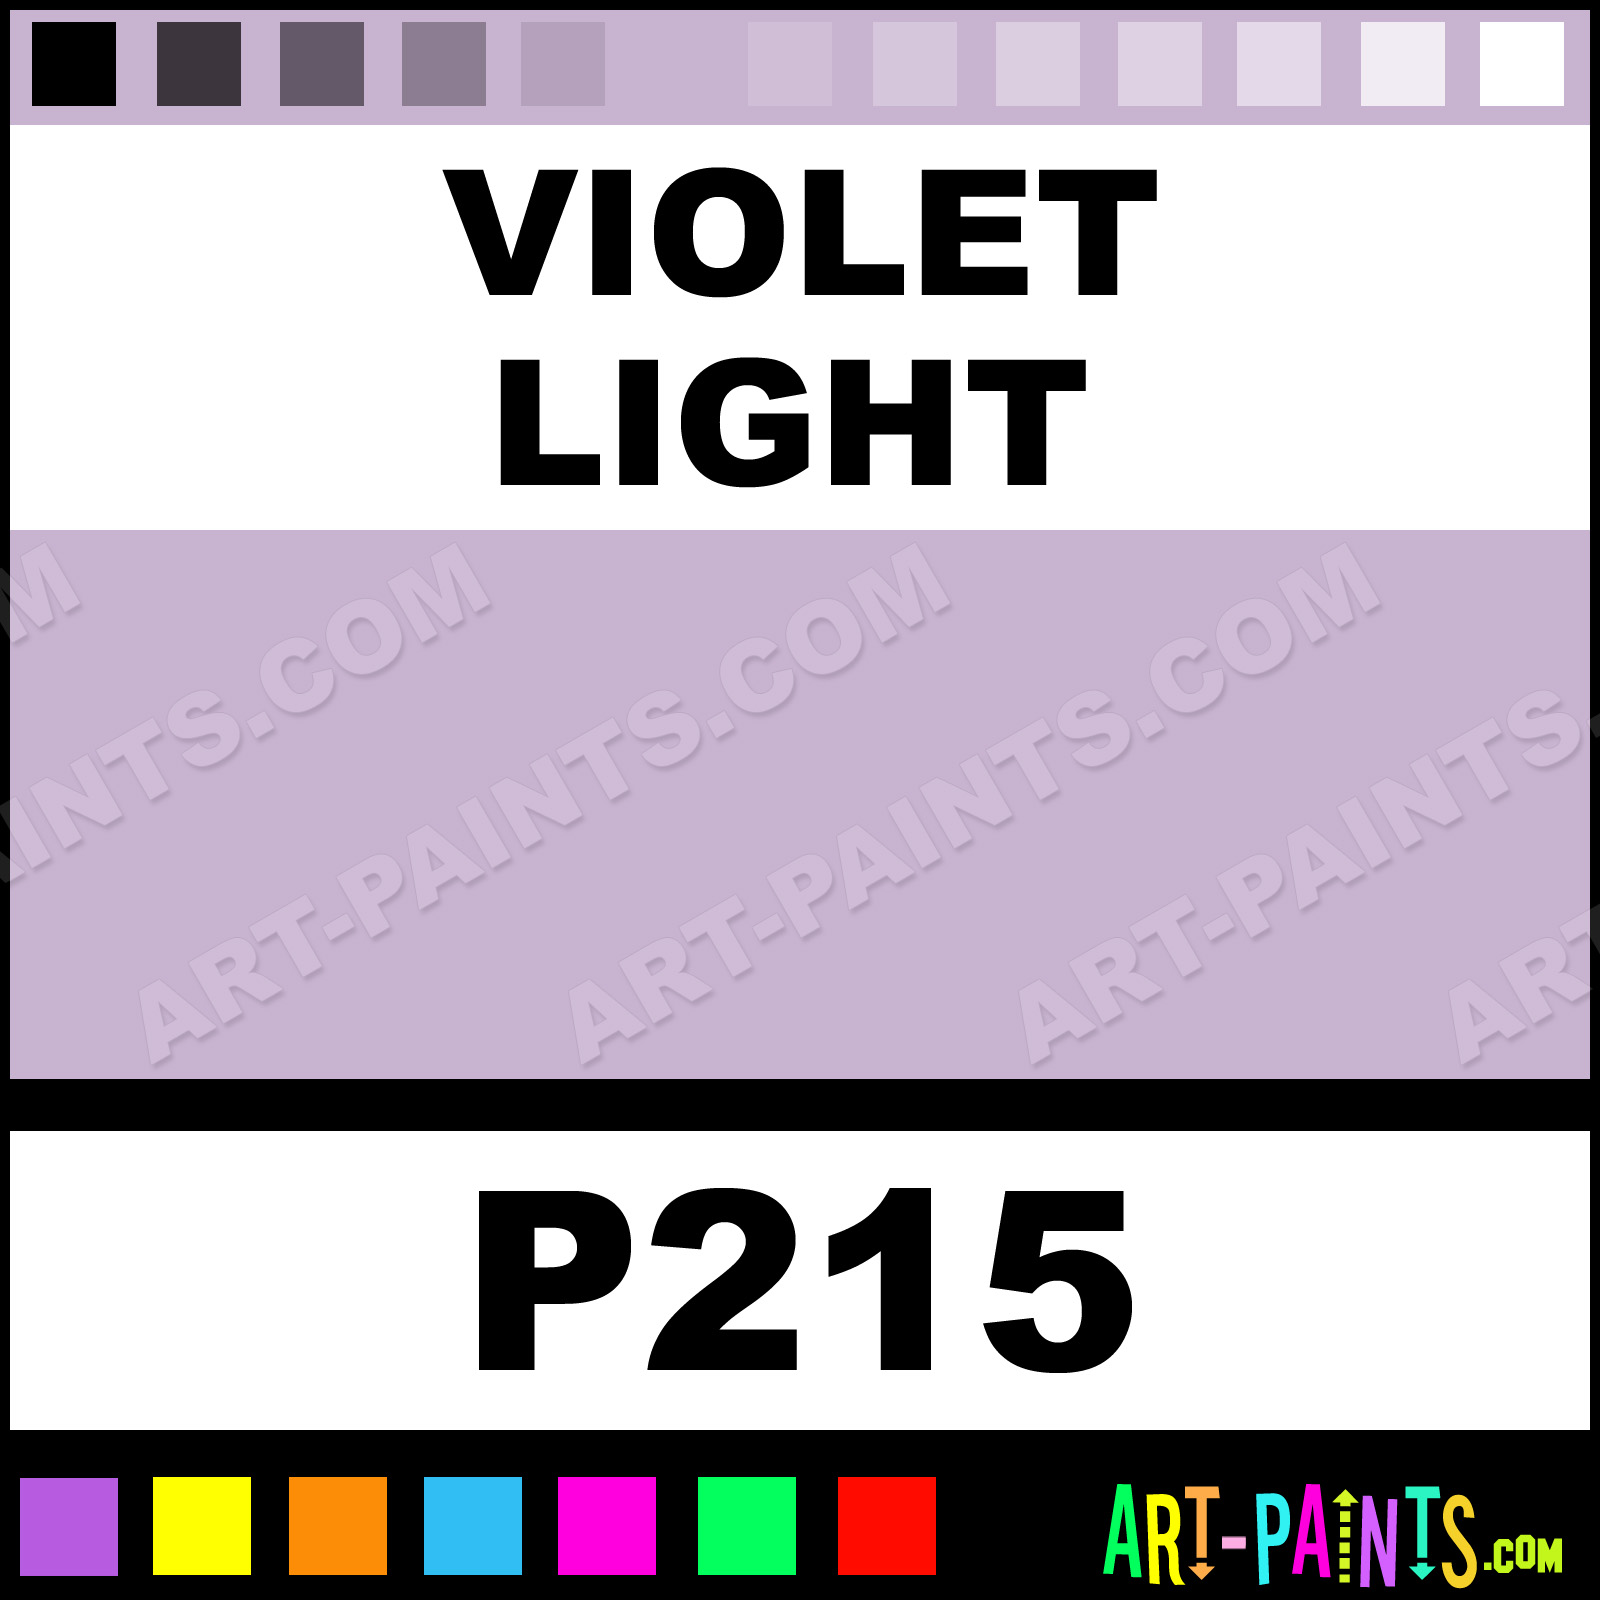  - Violet-Light-xlg